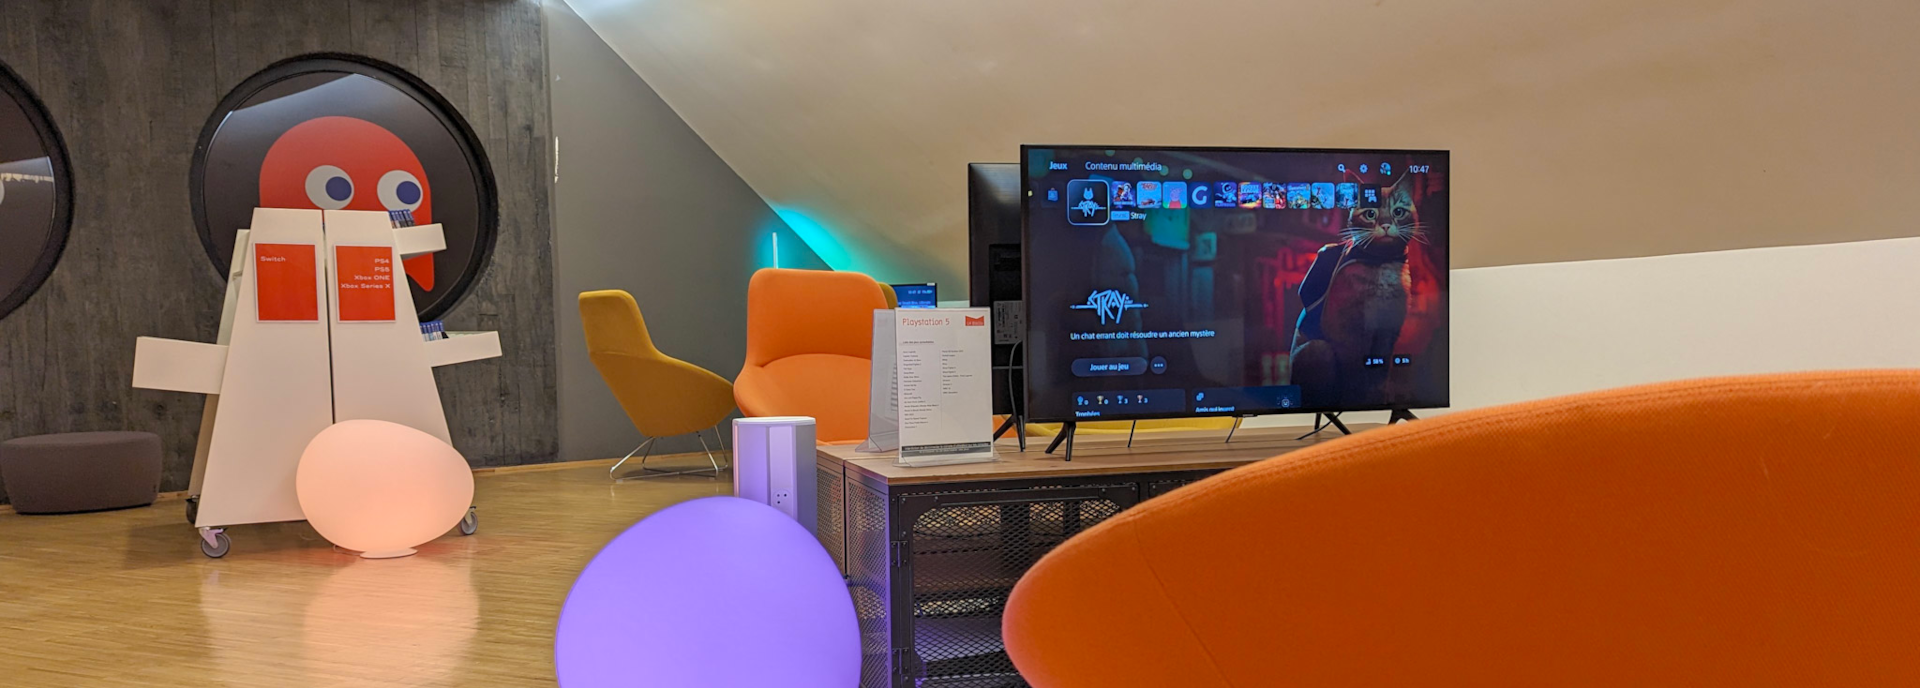 Bibliothèque Oscar Niemeyer : un nouvel espace dédié aux jeux vidéo